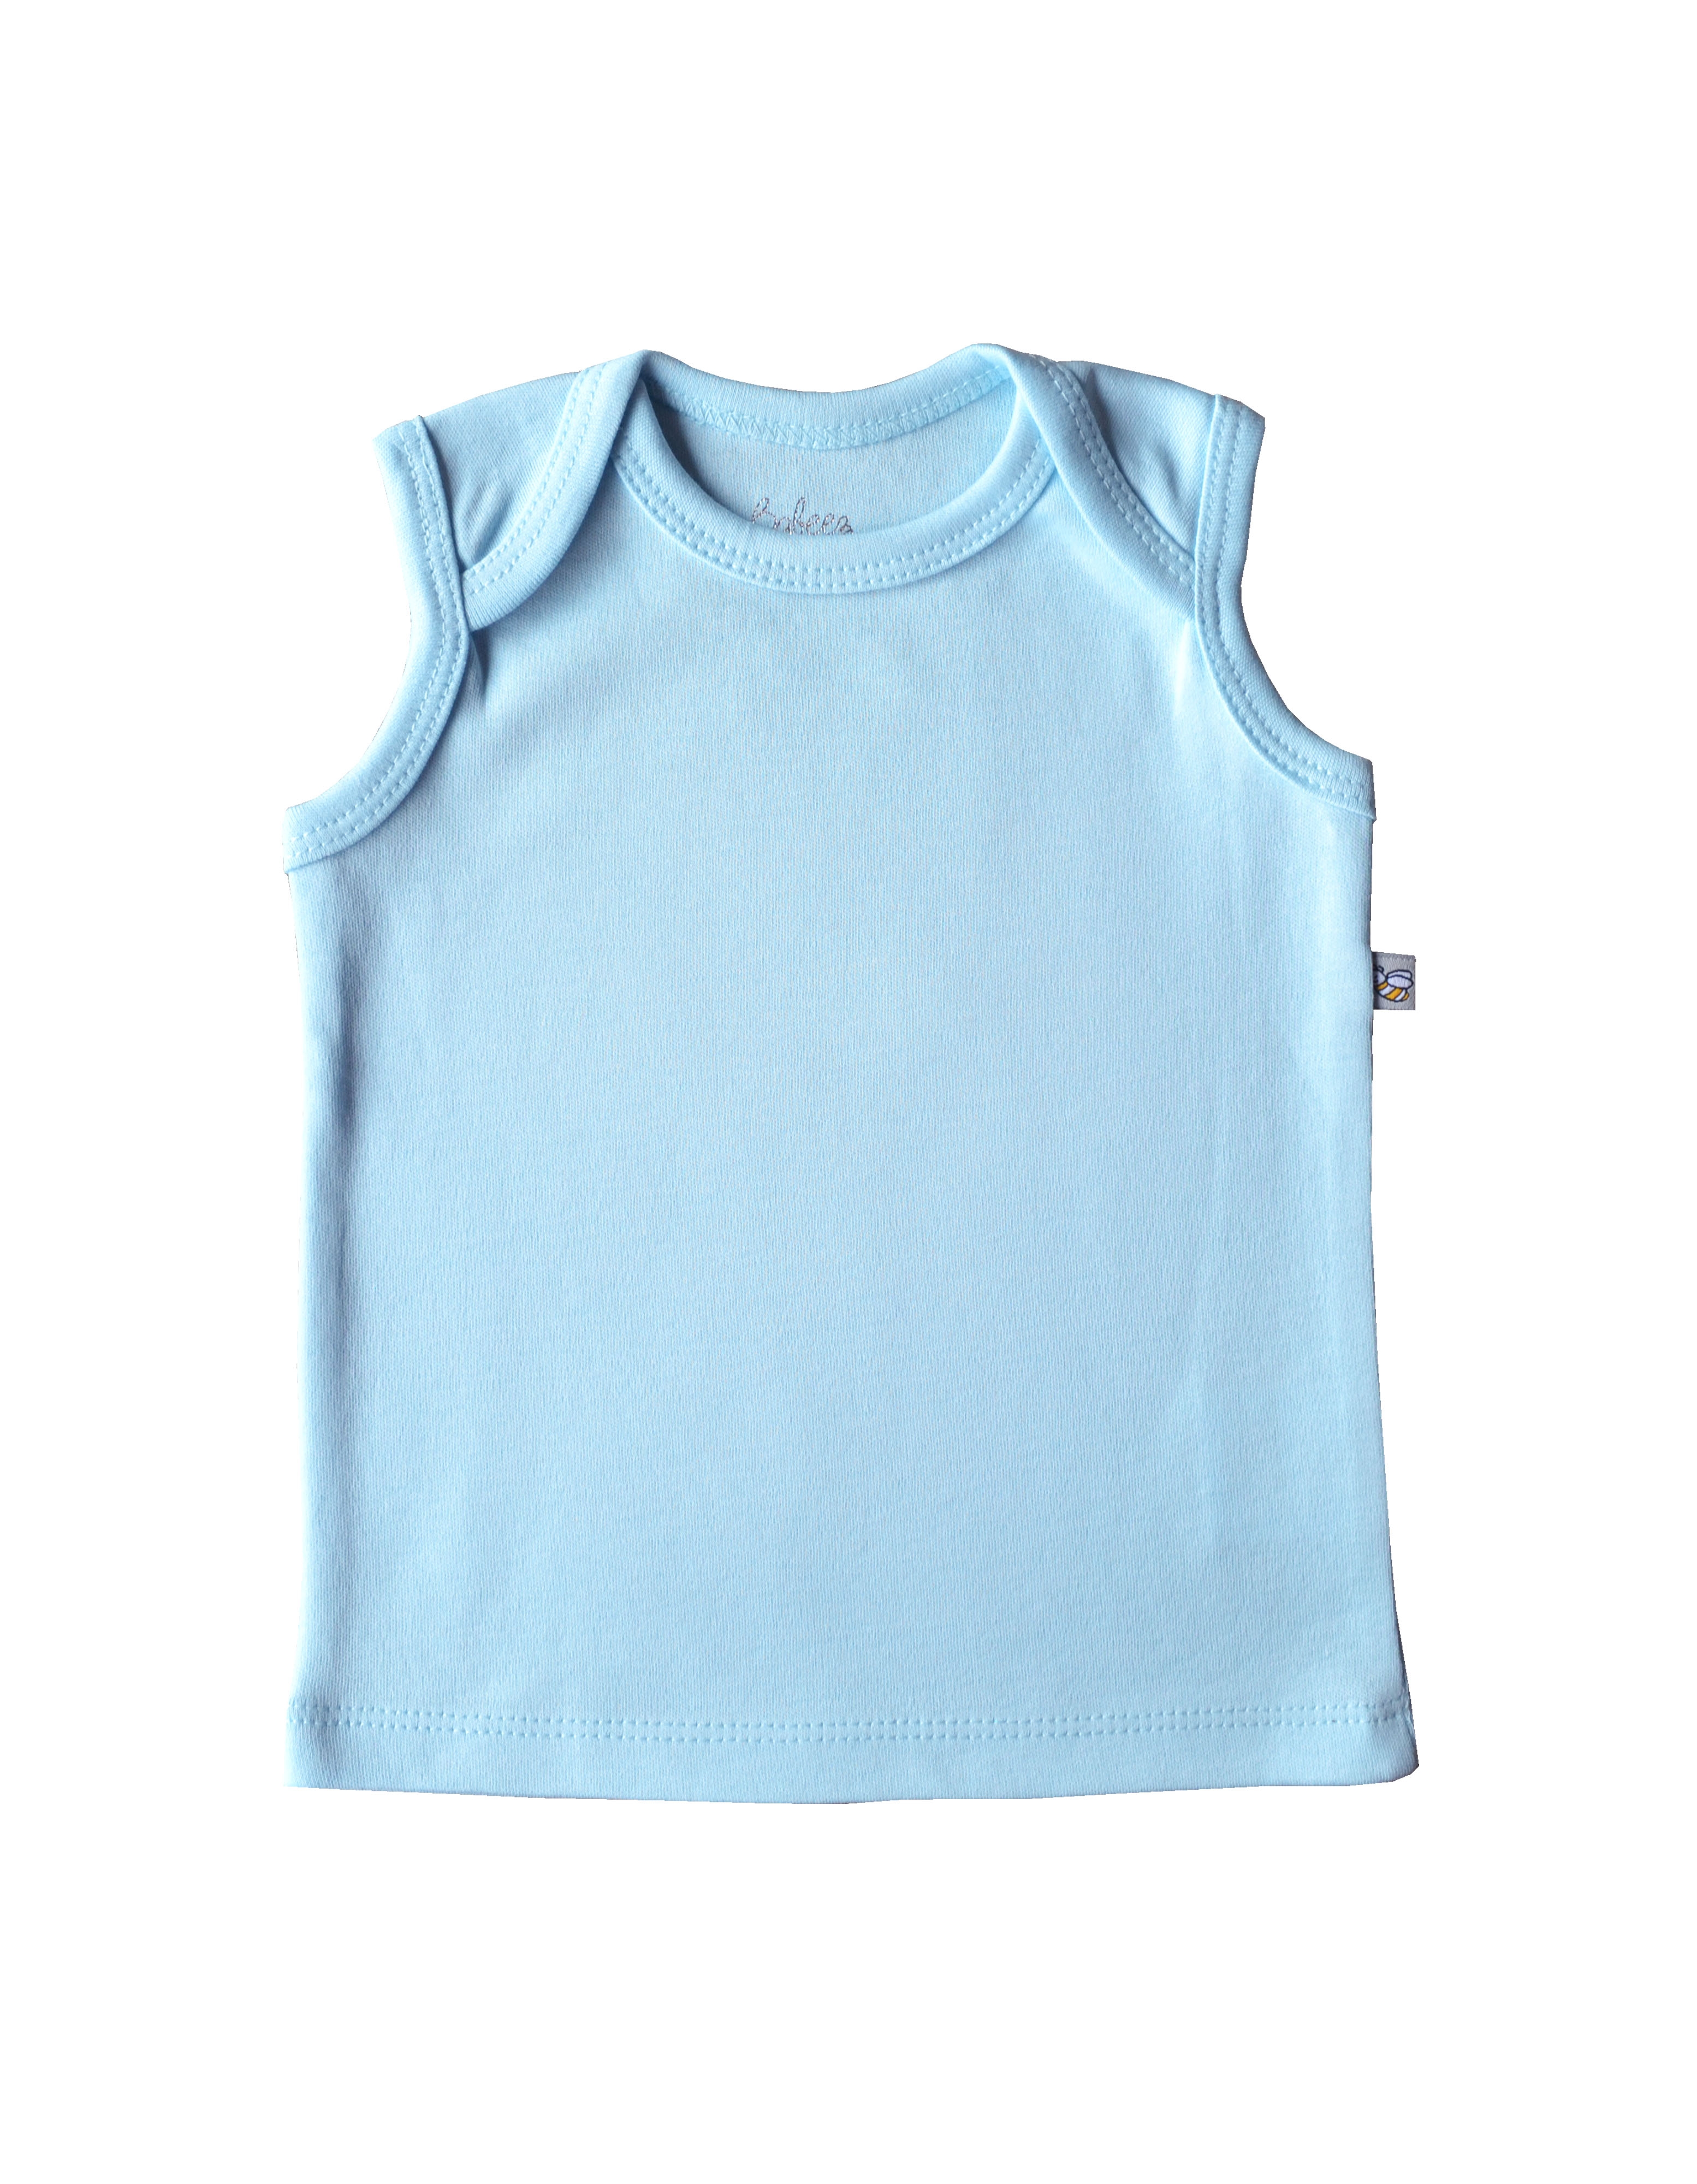 Blue Vest (100% Cotton Interlock Biowash)